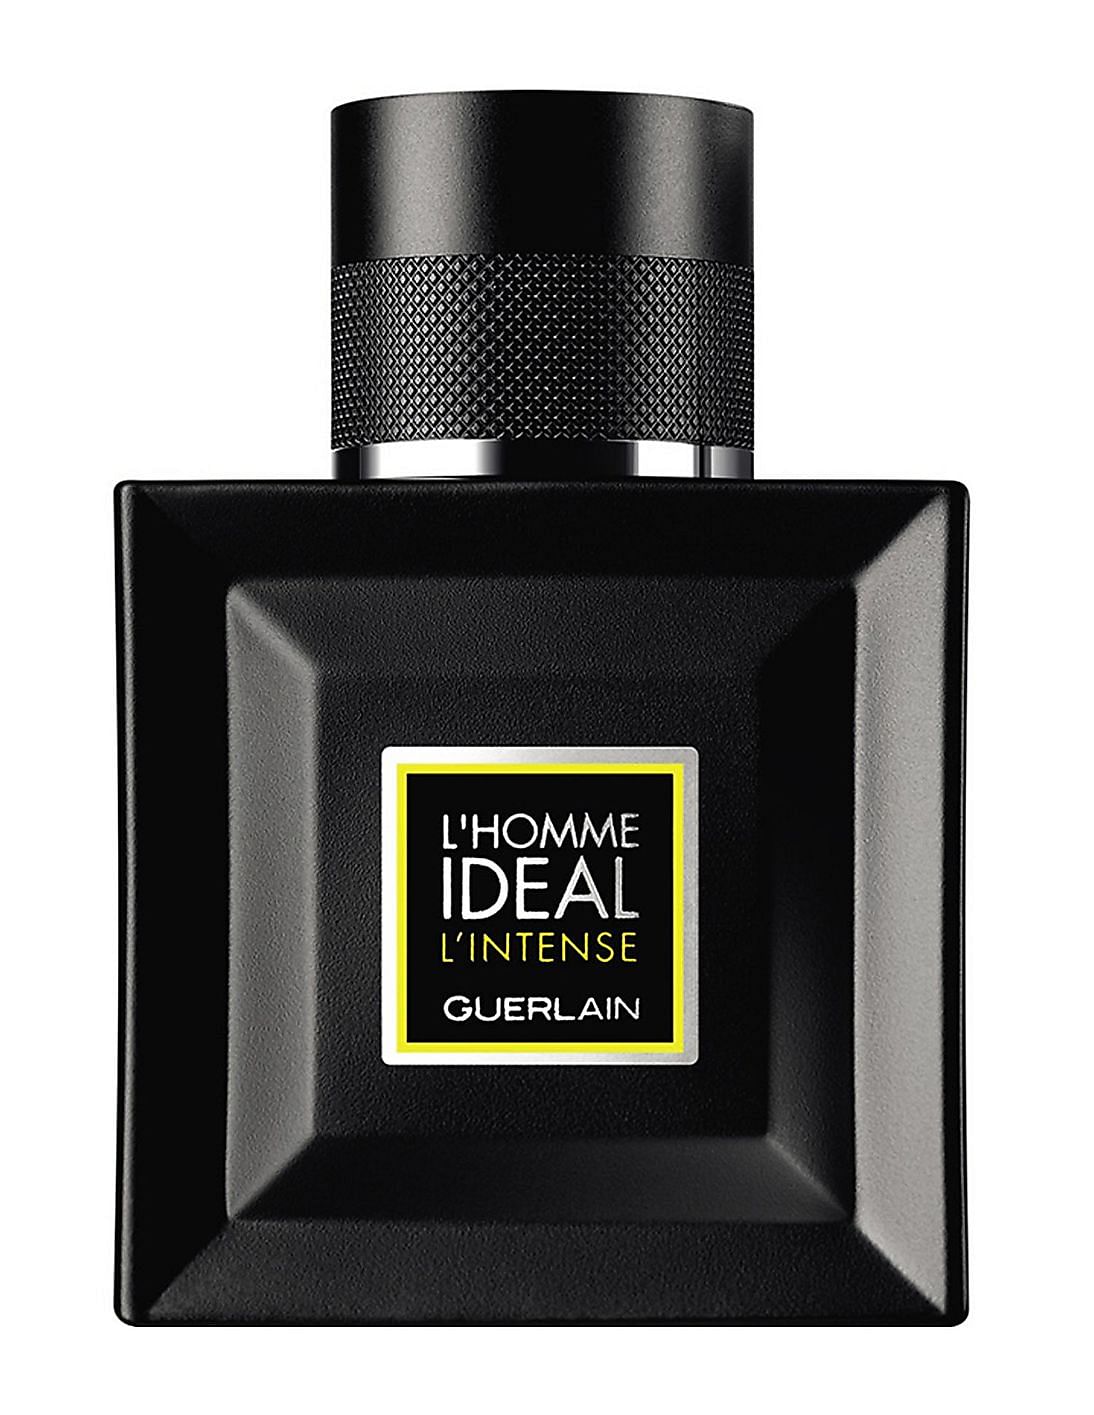 Buy GUERLAIN L'Homme Ideal Intense Eau De Parfum - NNNOW.com